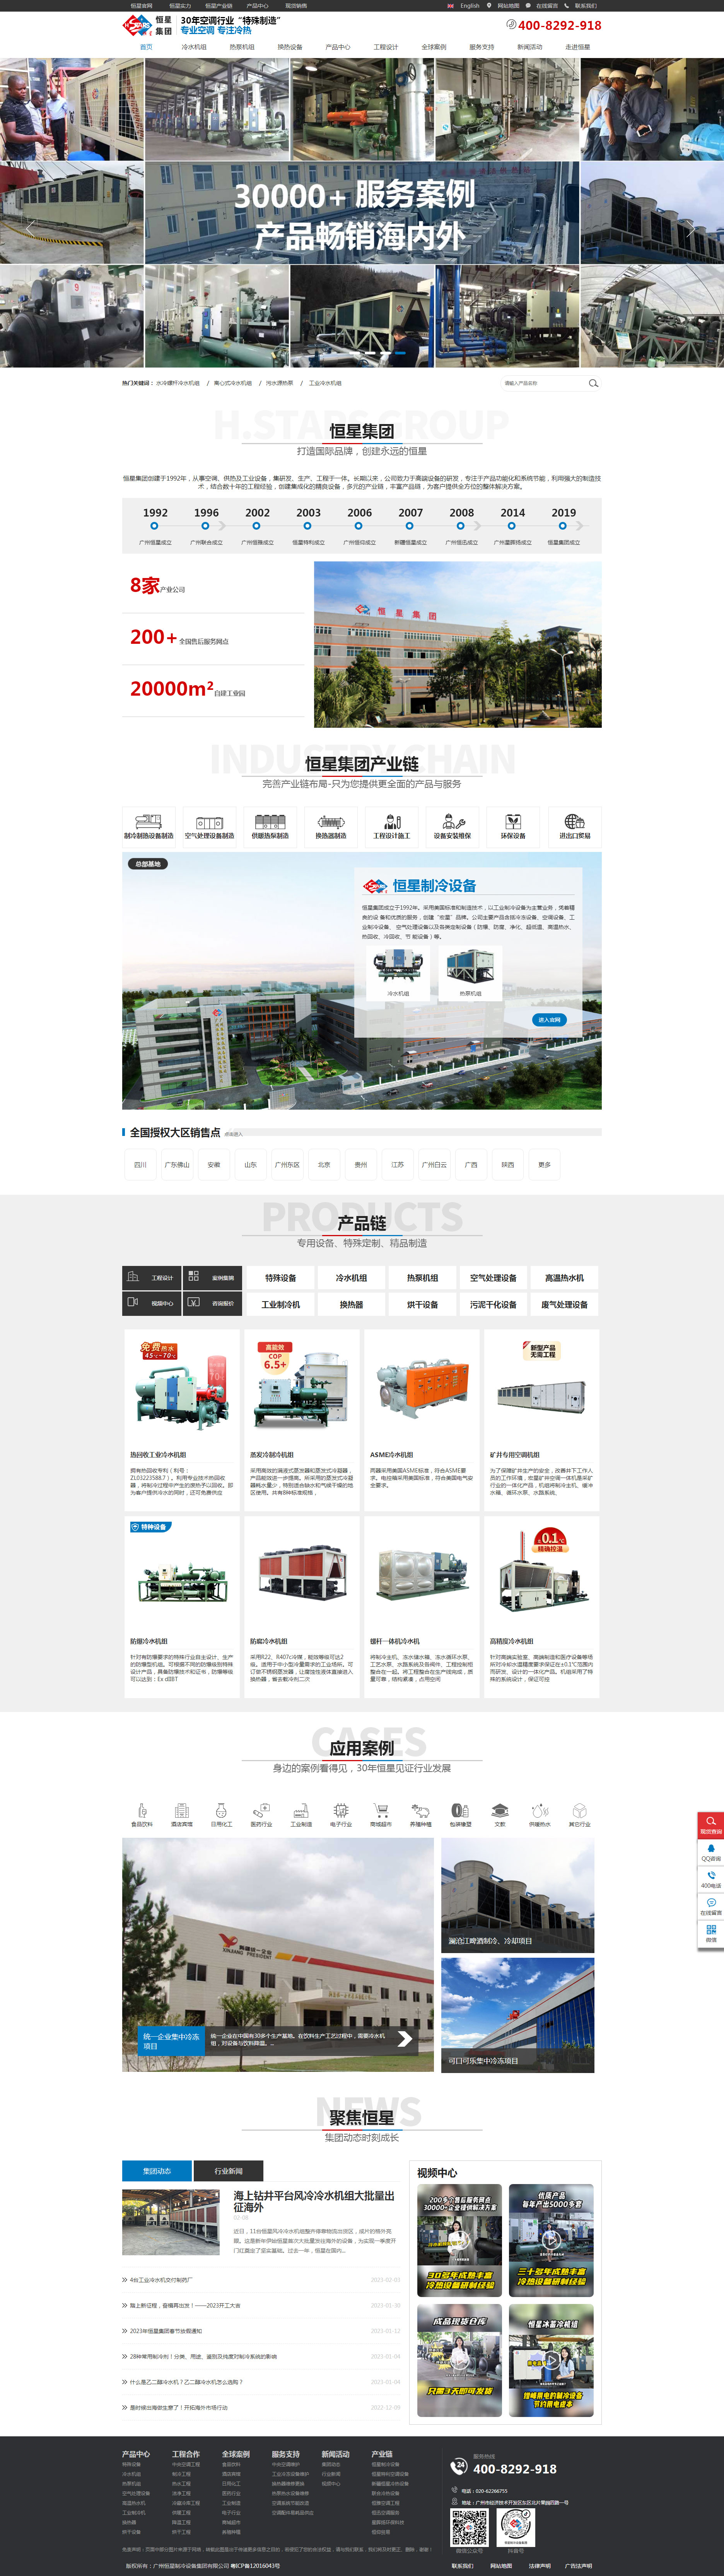 广州恒星制冷设备集团网站制作首页设计效果图